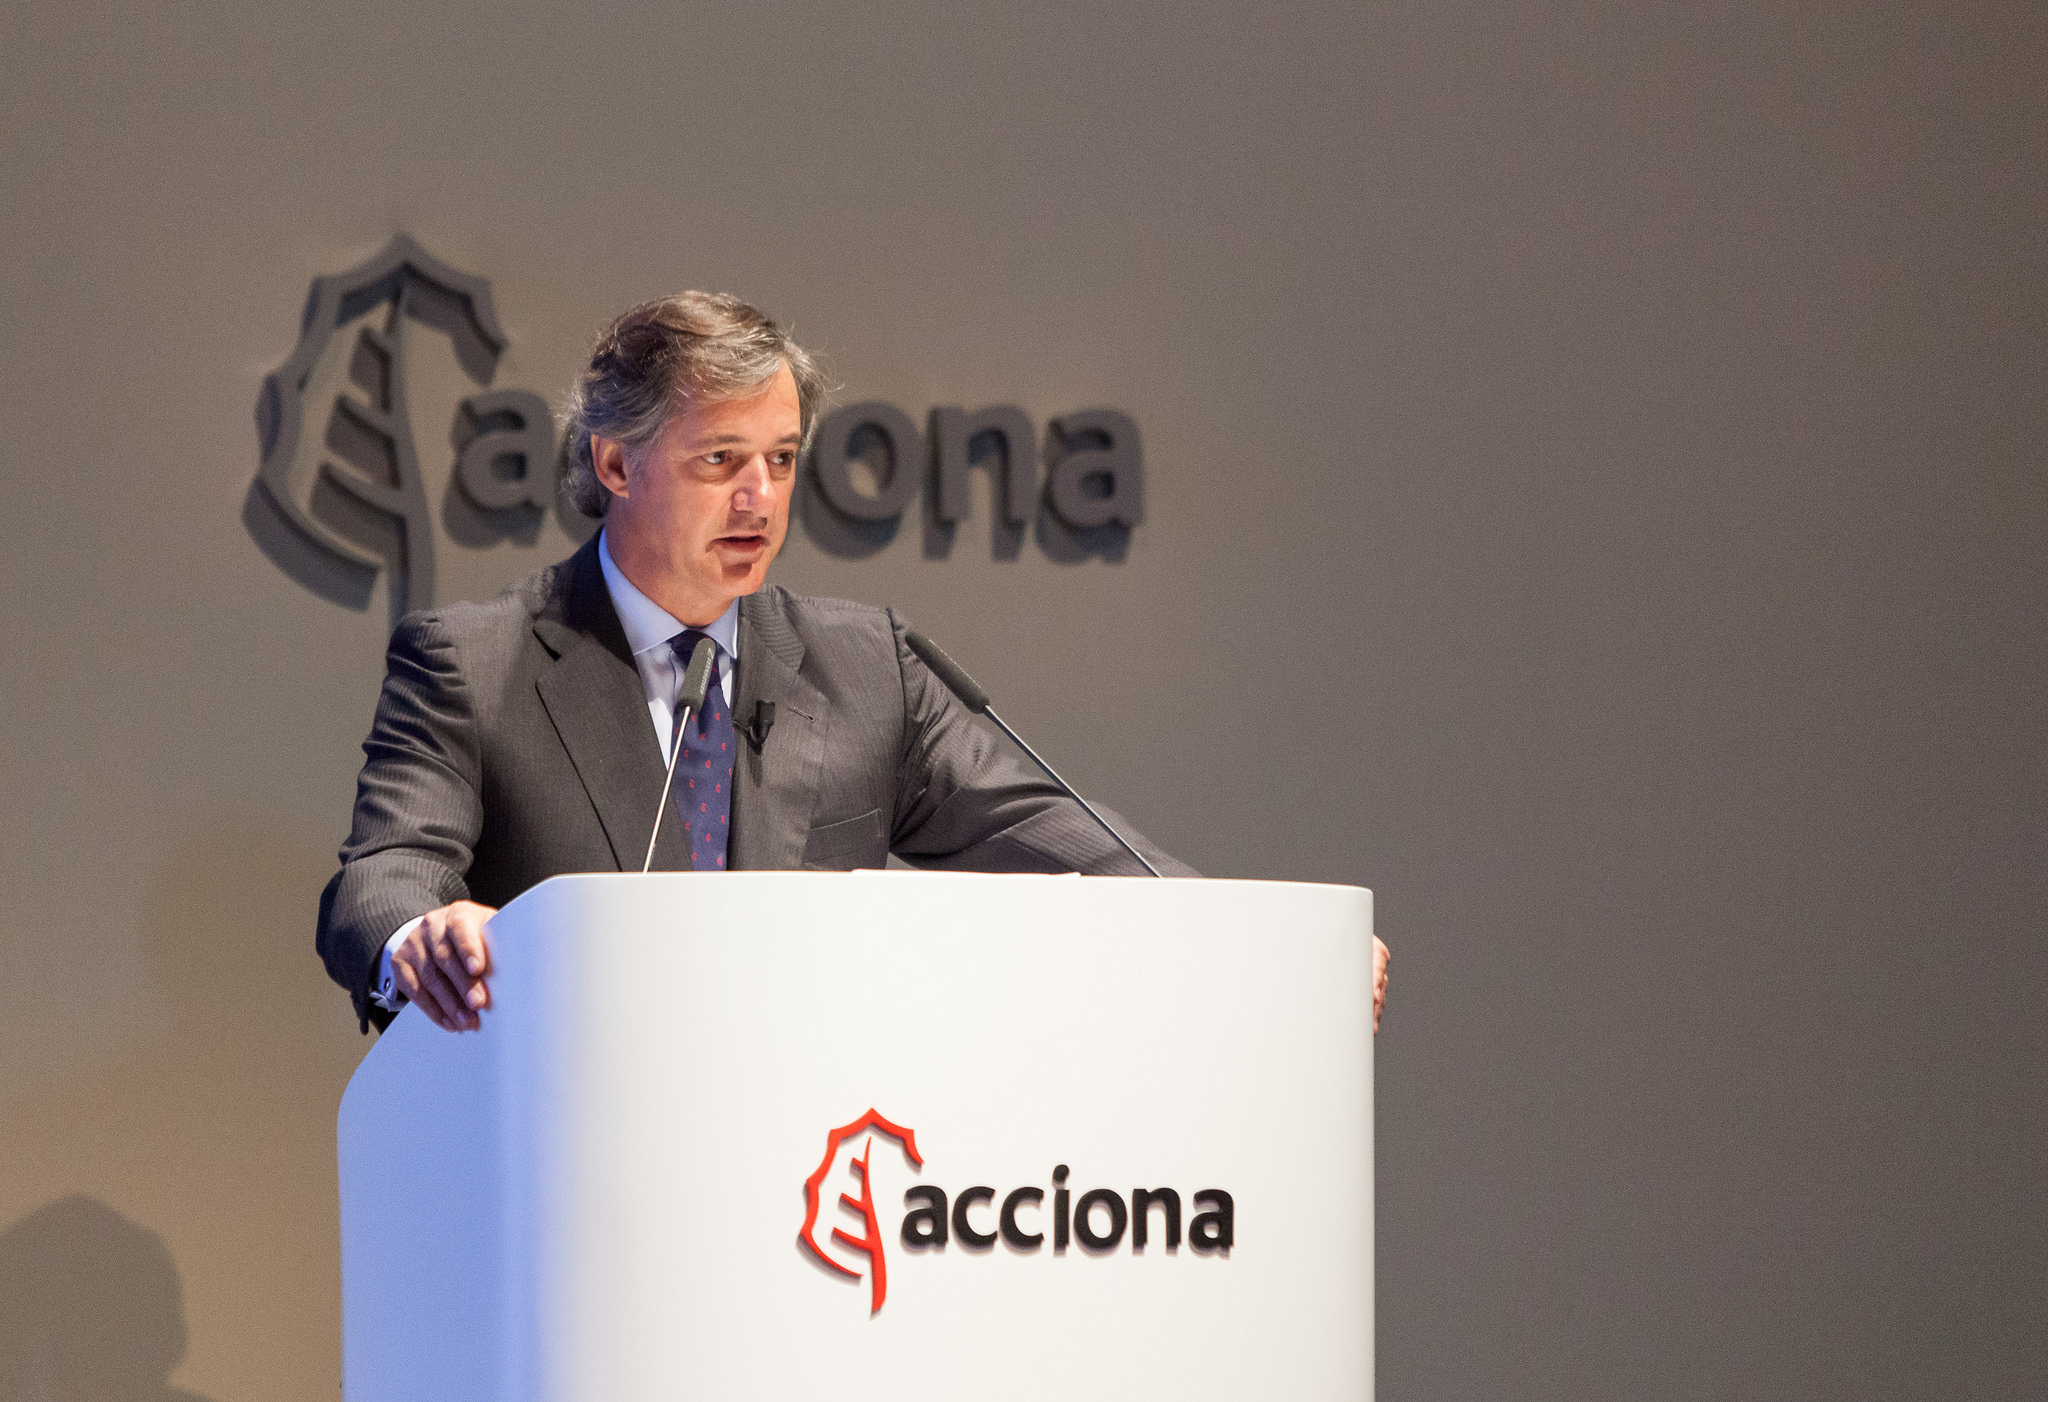 En 2016, Acciona se hizo con la central fotovoltaica más grande de Latinoamérica, ubicada en Chile / Flickr: Acciona